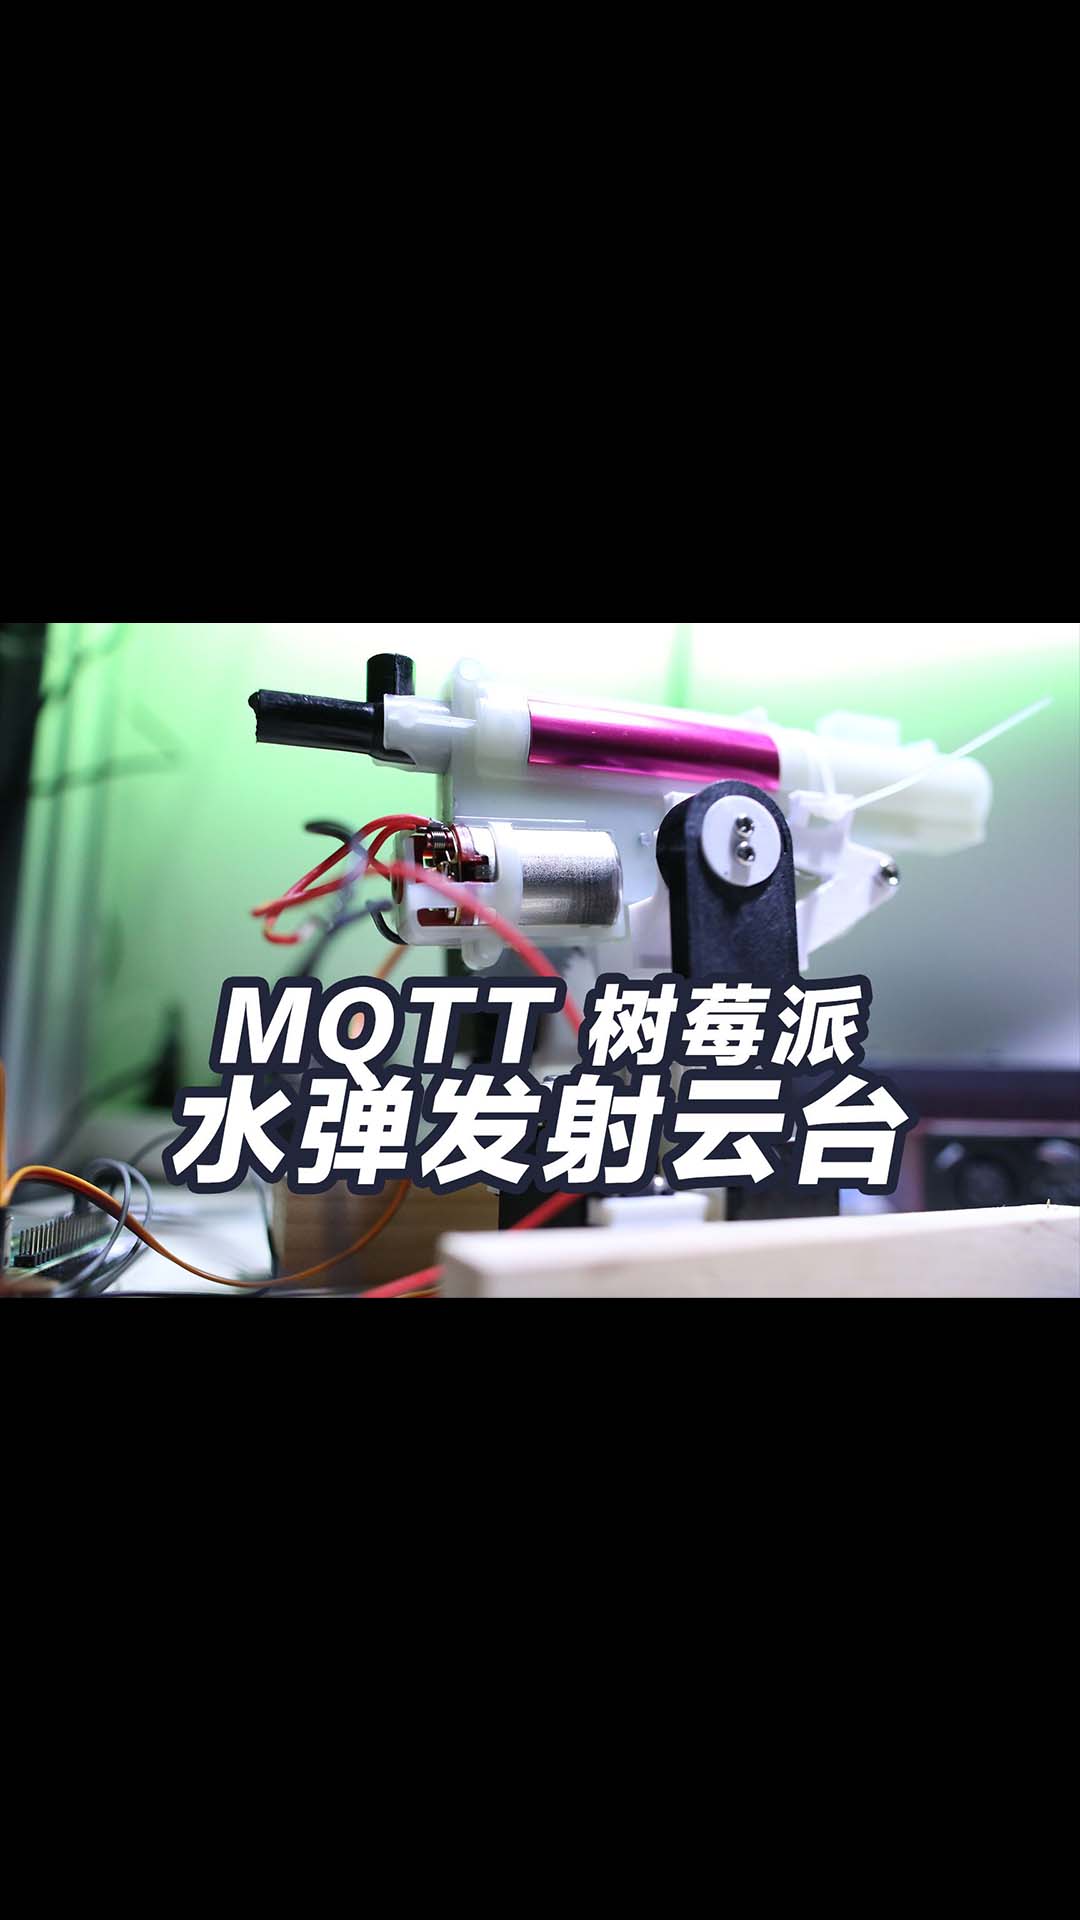 水弹发射器云台用树莓派和MQTT做4G遥控车 3D打印云台 手机4G控制